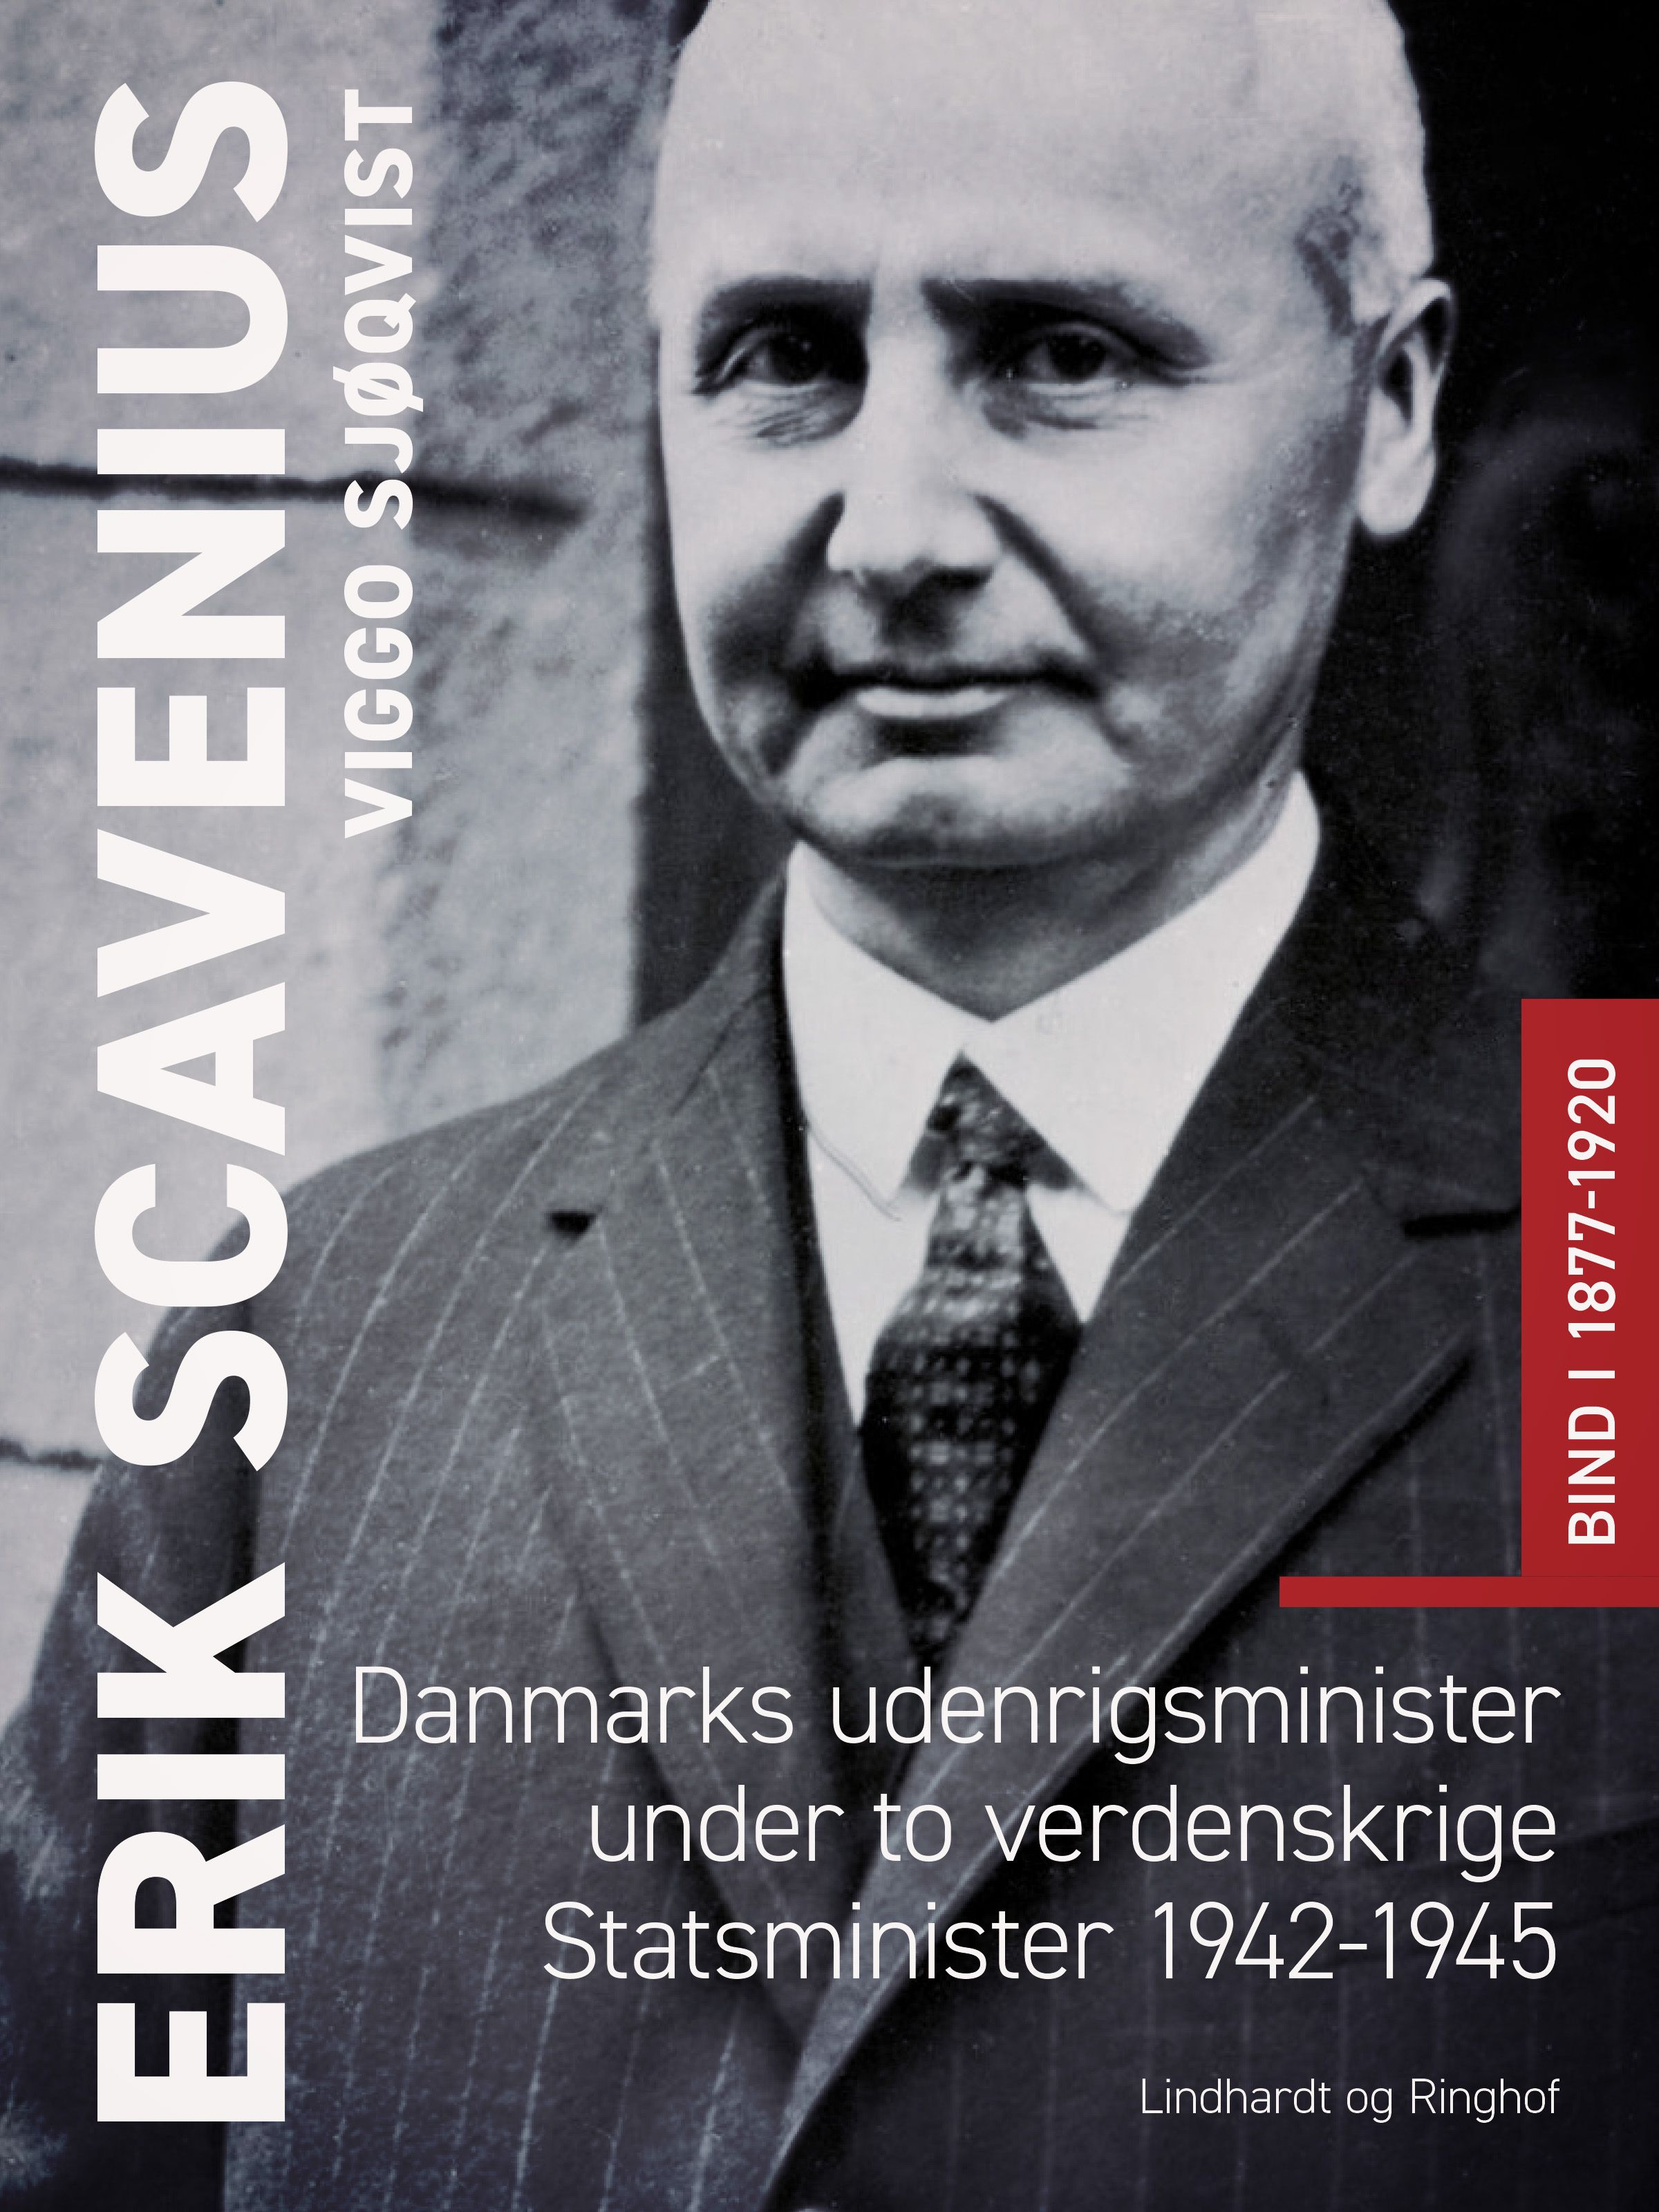 Erik Scavenius. Danmarks udenrigsminister under to verdenskrige. Statsminister 1942-1945. Bind I 1877-1920, e-bok av Viggo Sjøqvist